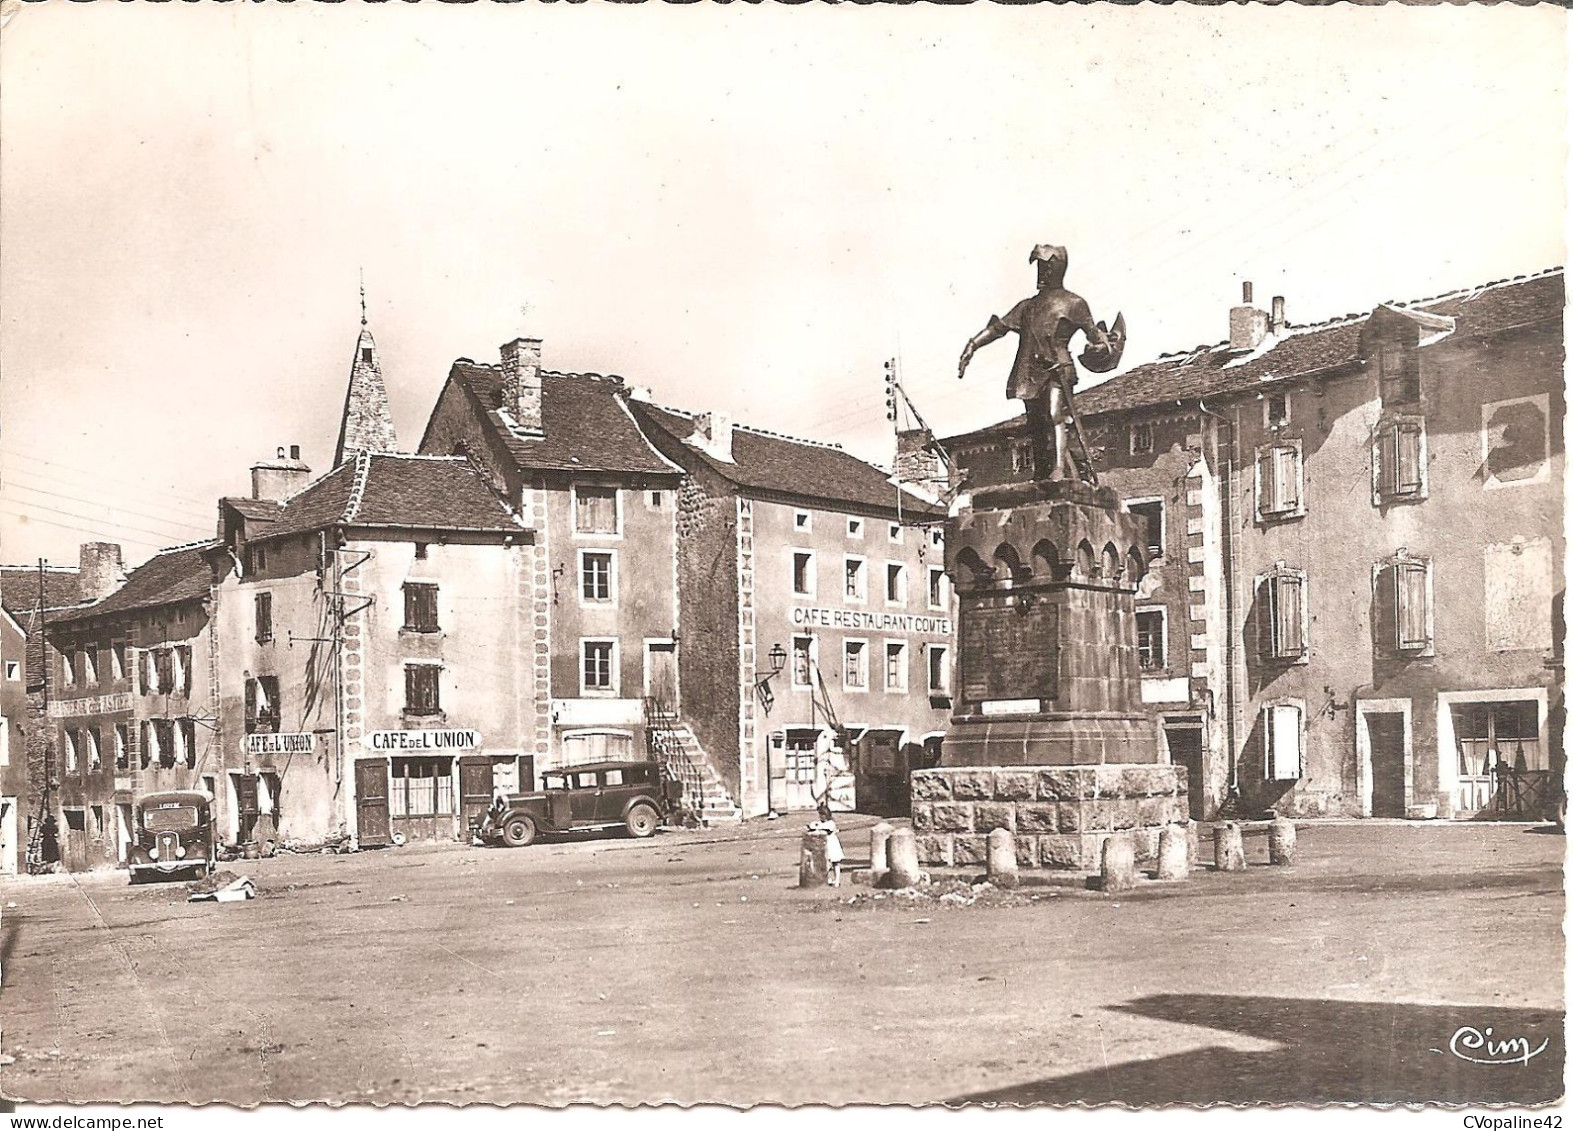 CHATEAUNEUF-de-RANDON (48) La Place Et Statue Duguesclin  CPSM GF - Chateauneuf De Randon